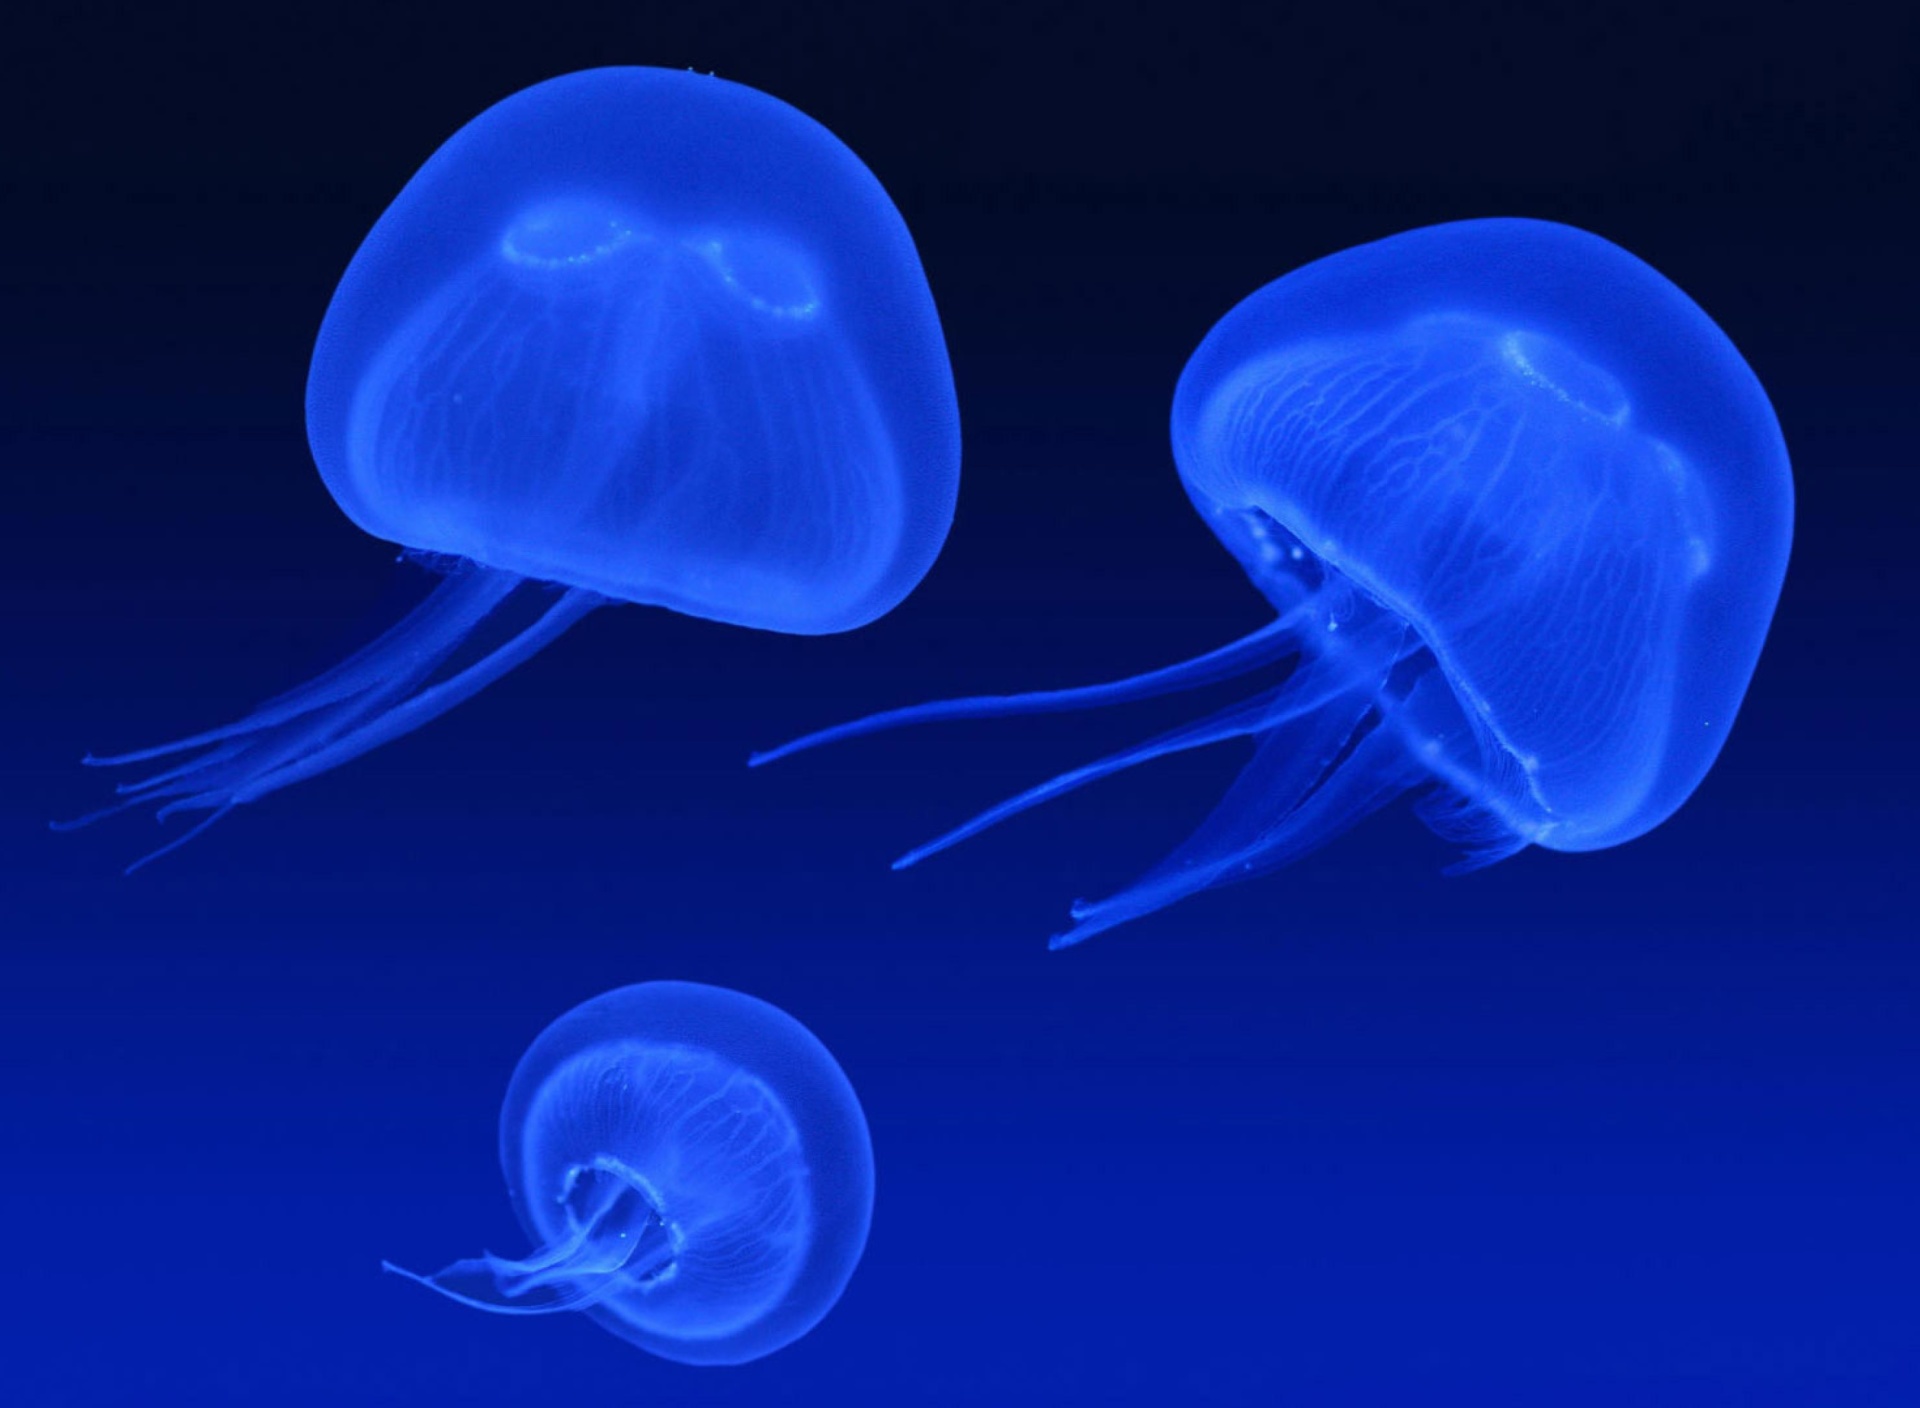 Neon box jellyfish screenshot #1 1920x1408